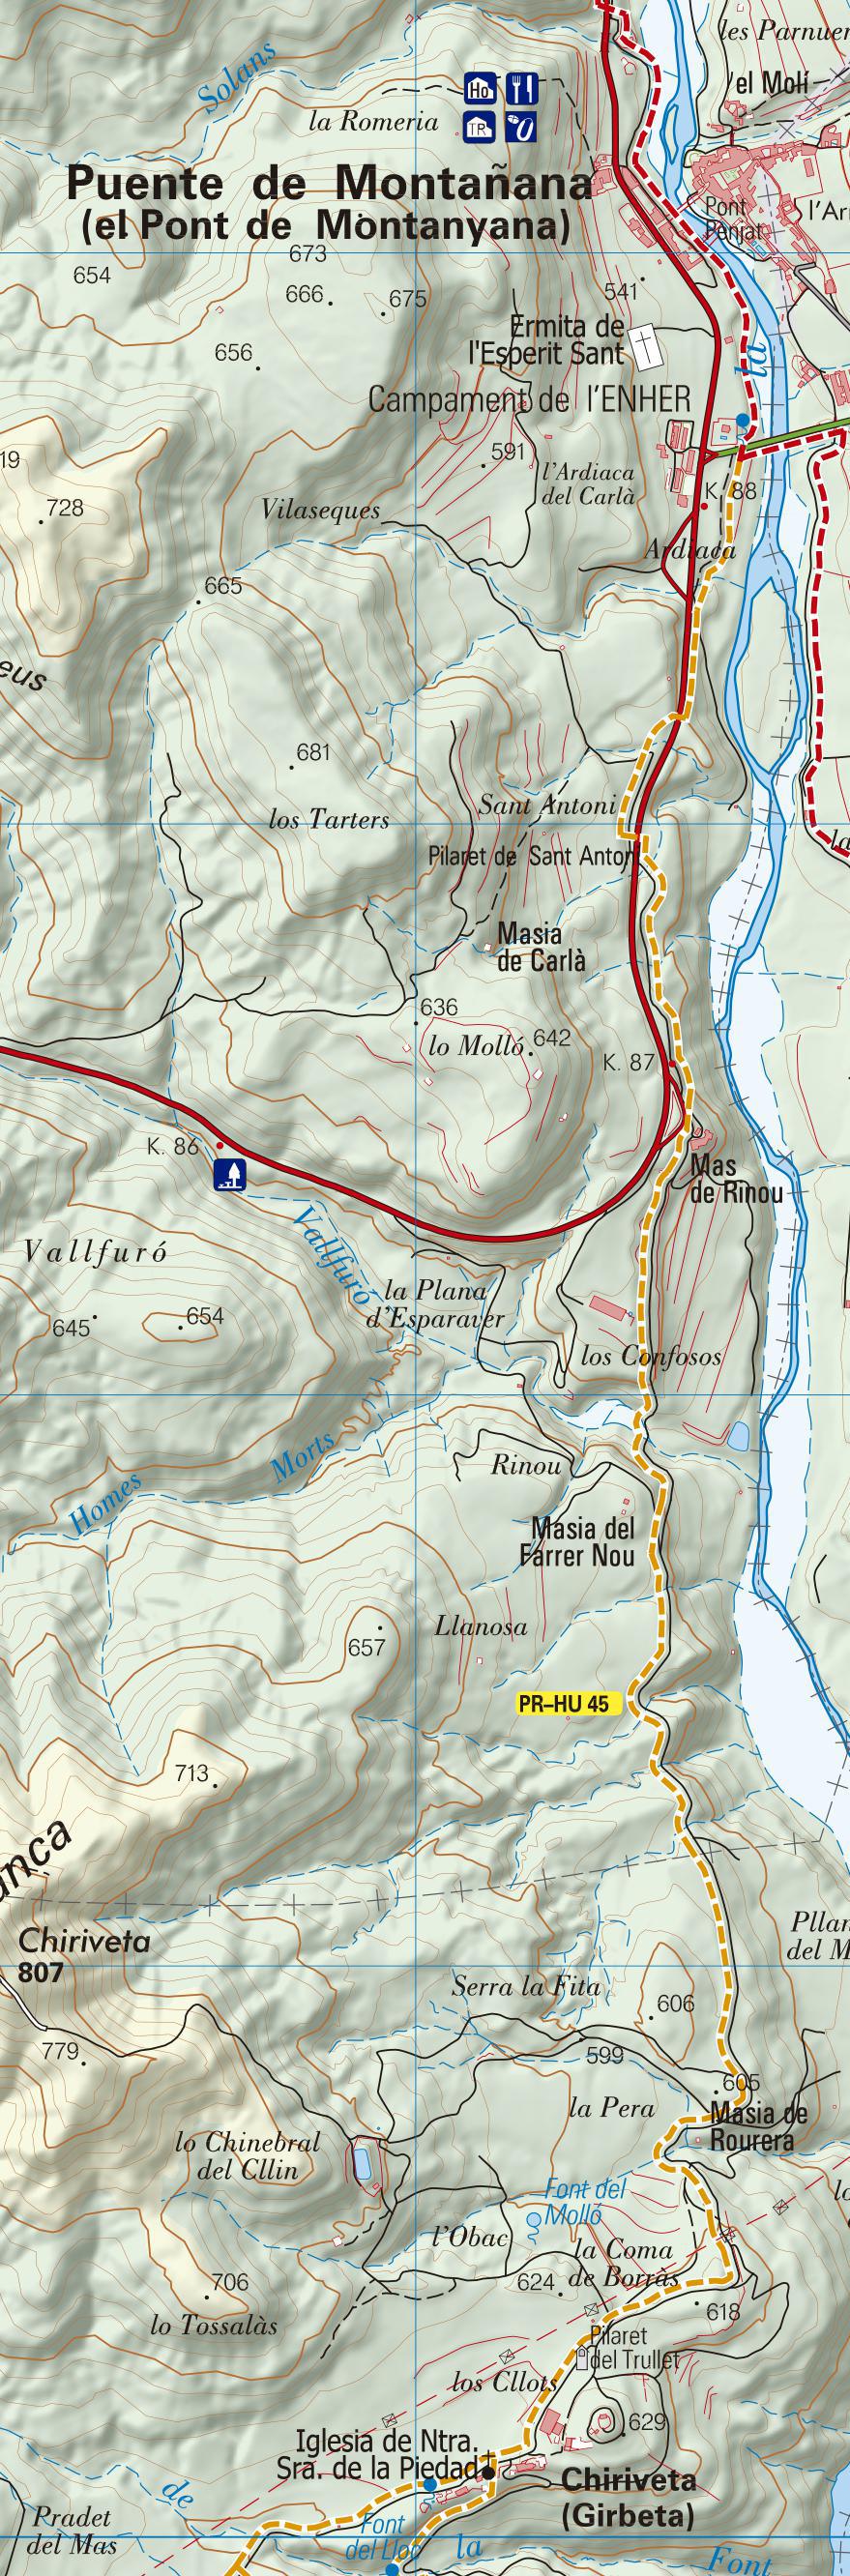 PR-HU 45, etapa 1: Pte de Montañana - Chiriveta